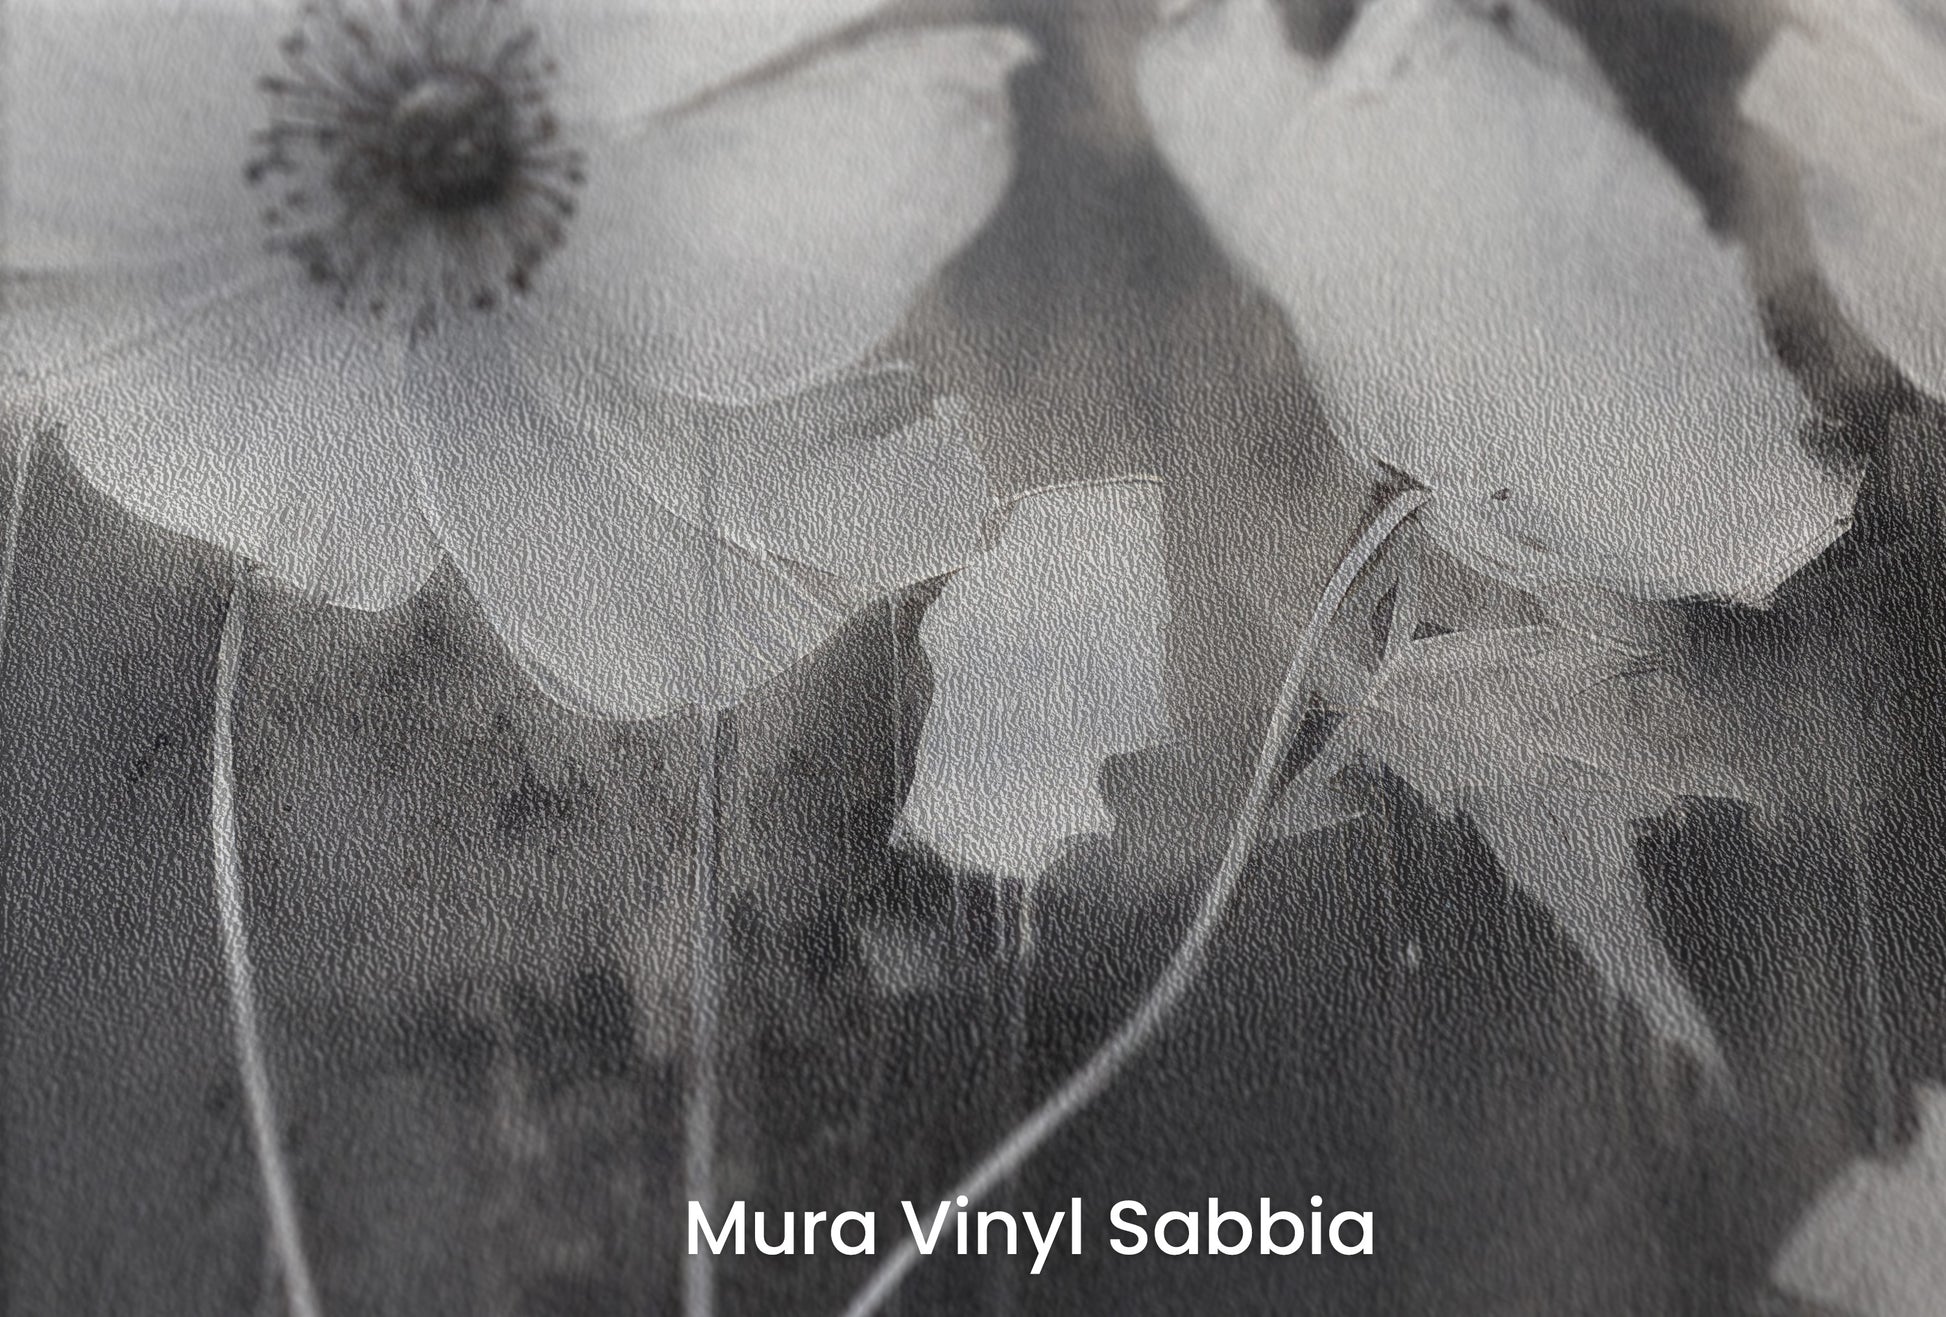 Zbliżenie na artystyczną fototapetę o nazwie NOCTURNAL BLOOMS na podłożu Mura Vinyl Sabbia struktura grubego ziarna piasku.